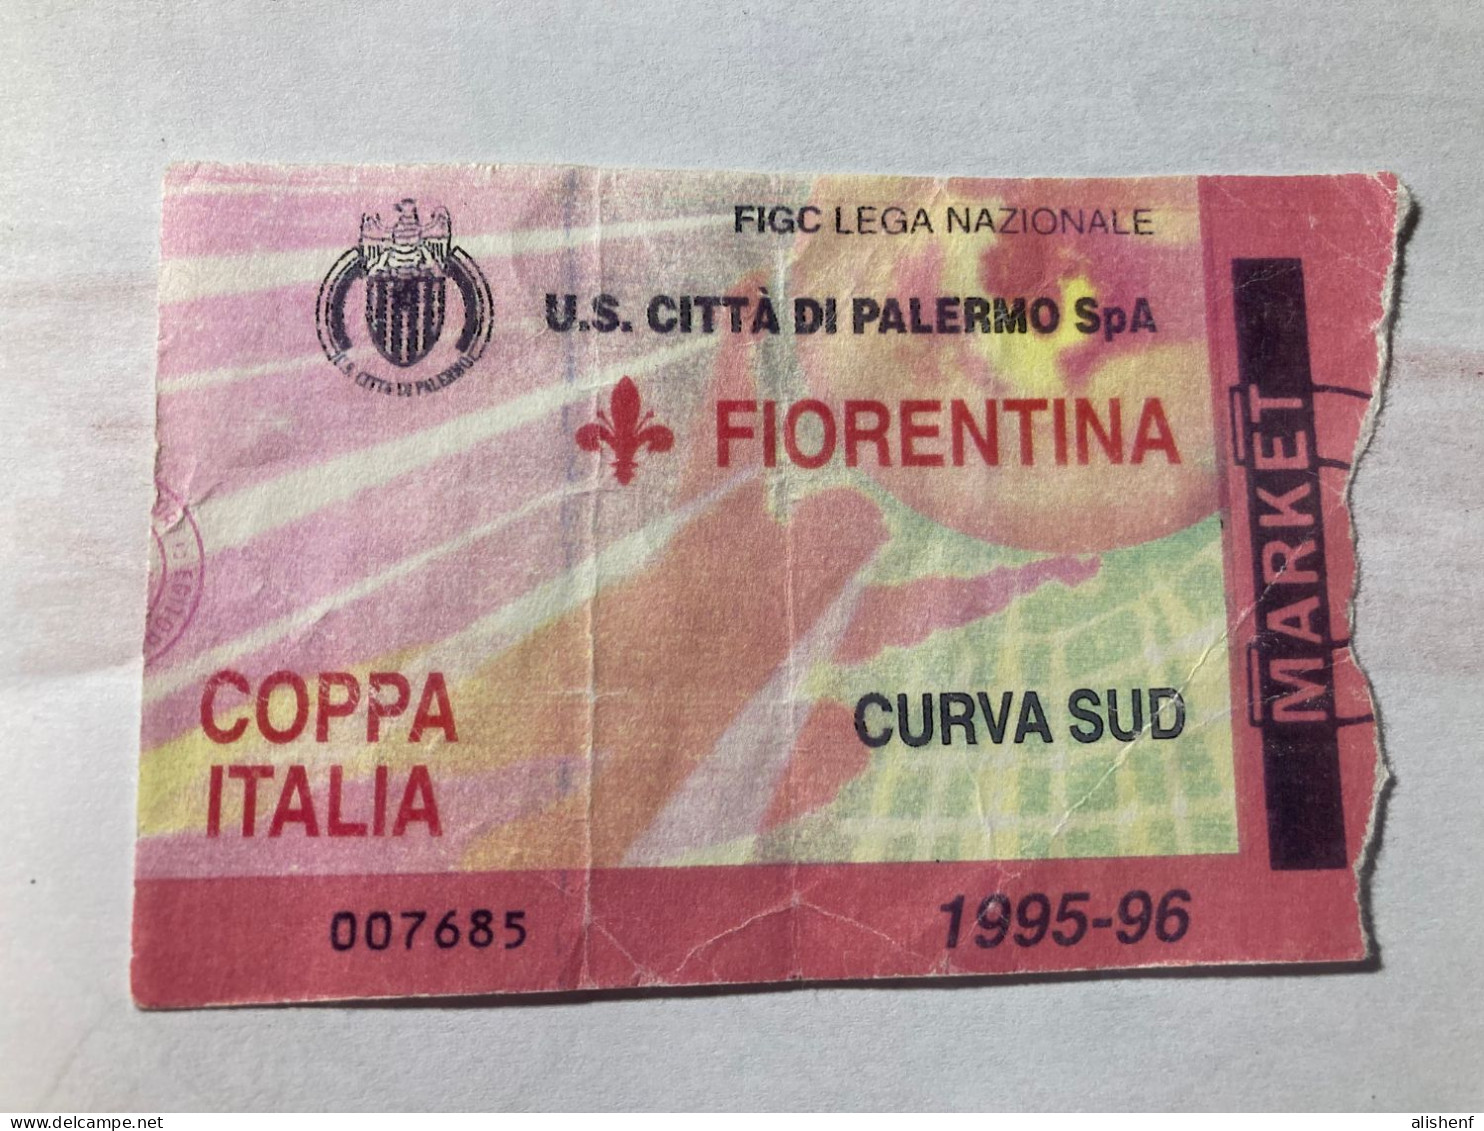 Biglietto Stadio Favorita Palermo Fiorentina 1995-96 Coppa Italia - Tickets - Vouchers